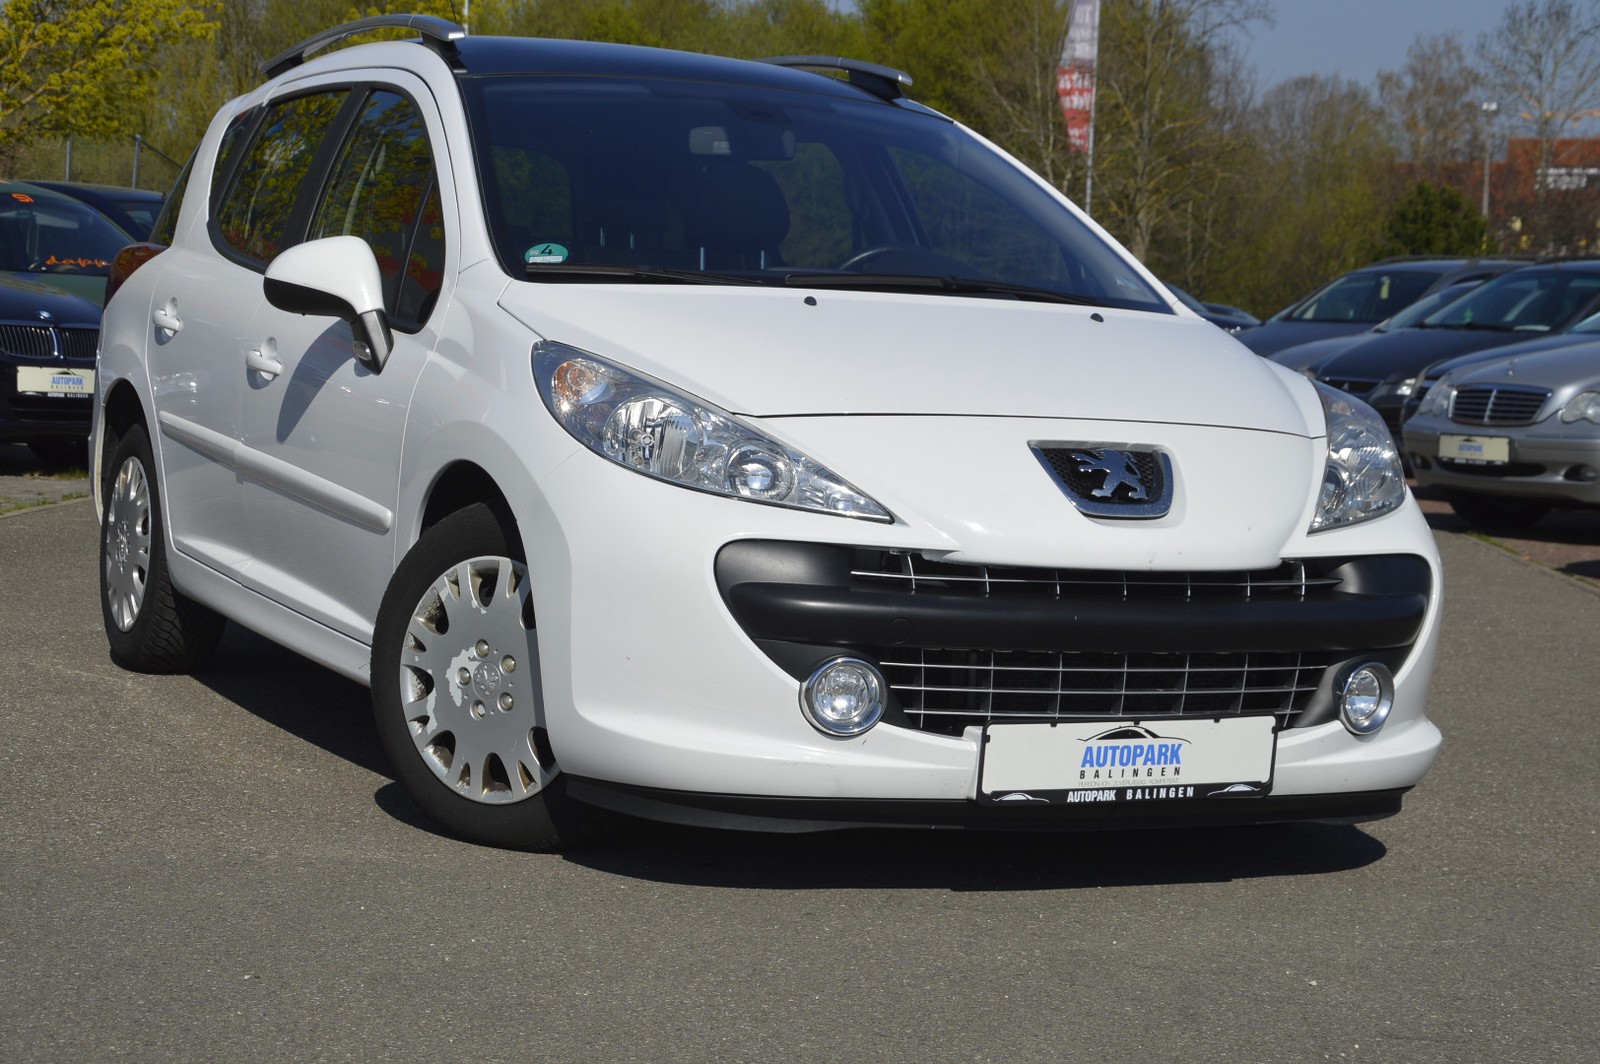 Peugeot 207 SW Sport gebraucht kaufen in Balingen Preis 2990 eur